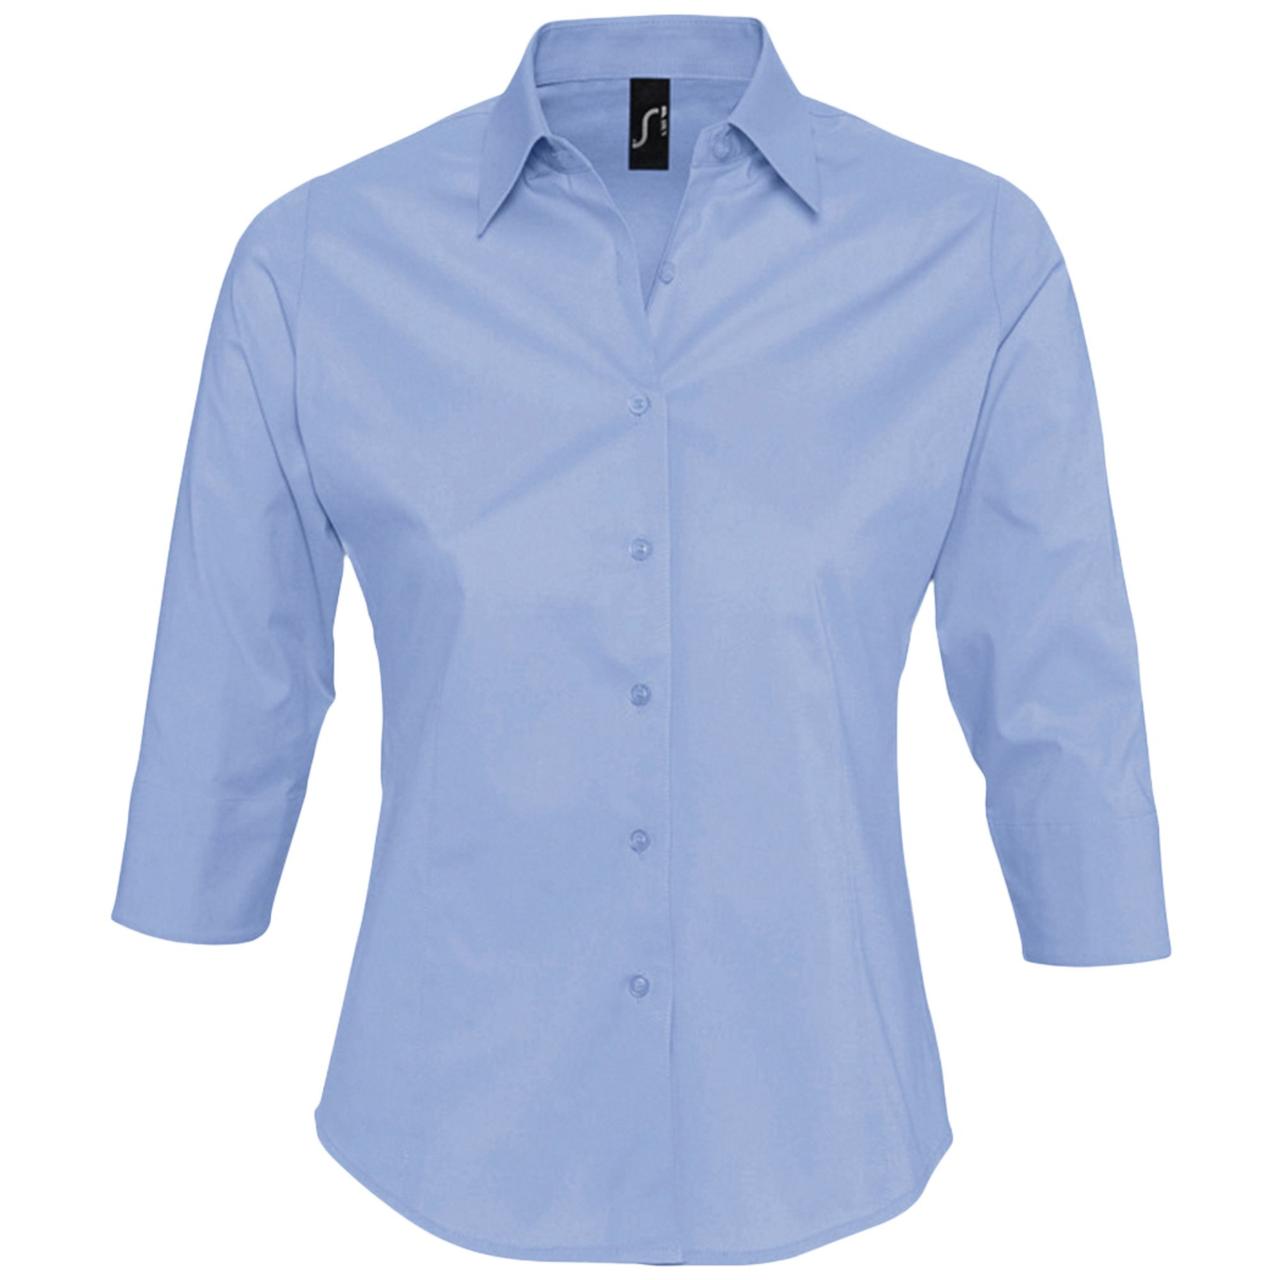 Рубашка женская с рукавом 3/4 Effect 140, голубая (артикул 2510.14)